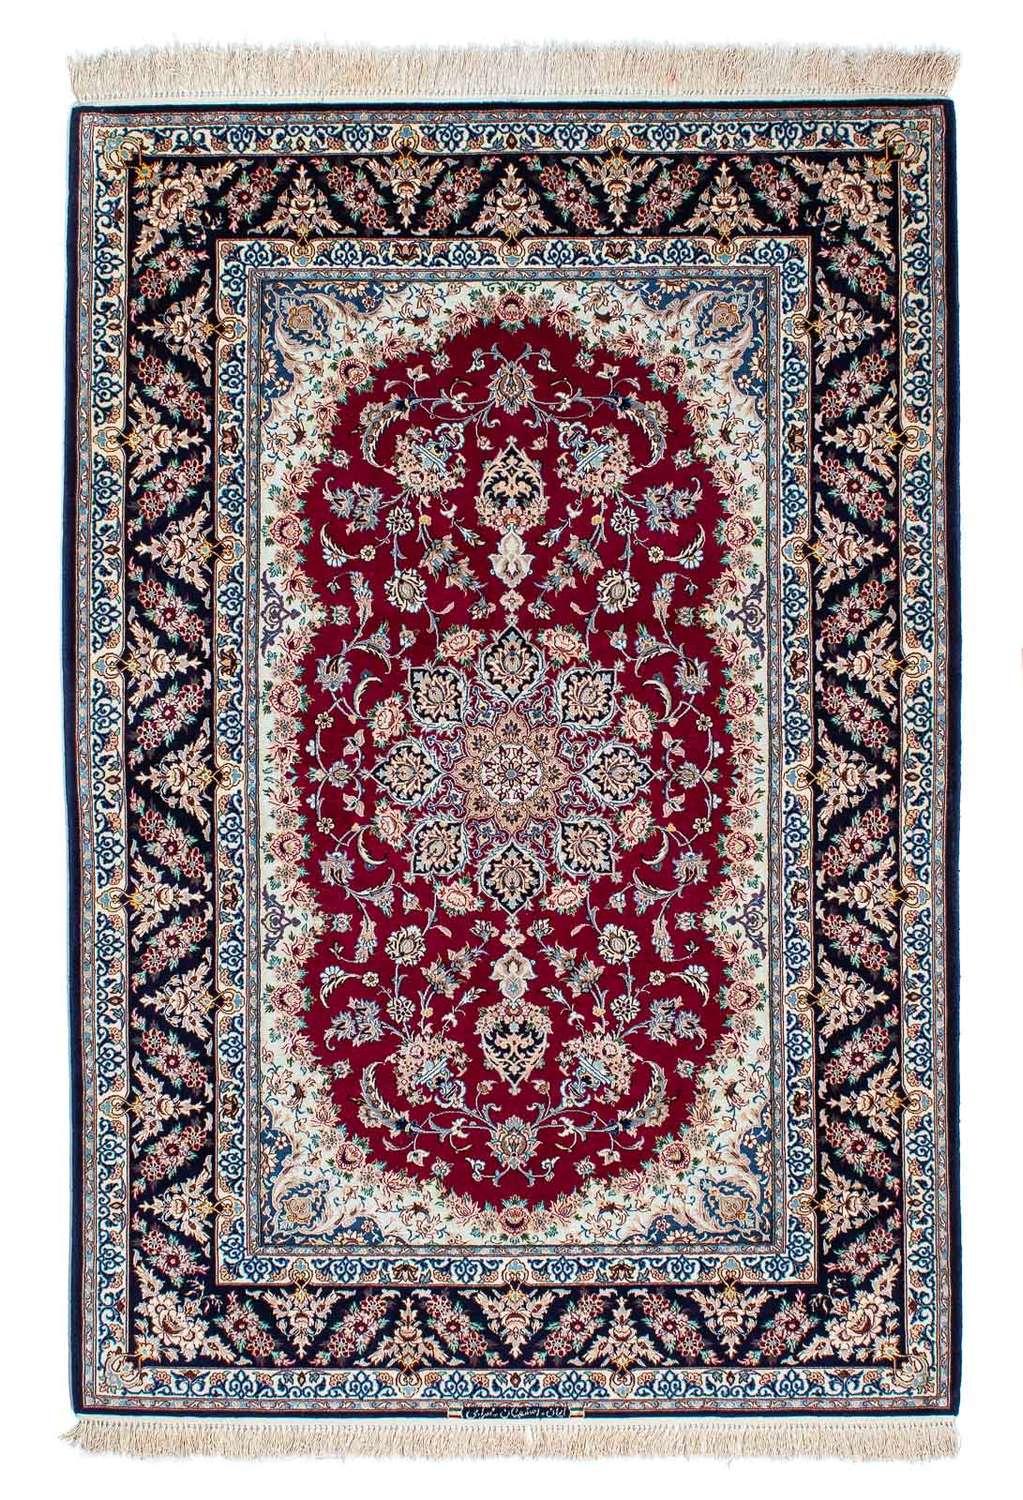 Tapis persan - Isfahan - Premium - 194 x 131 cm - rouge